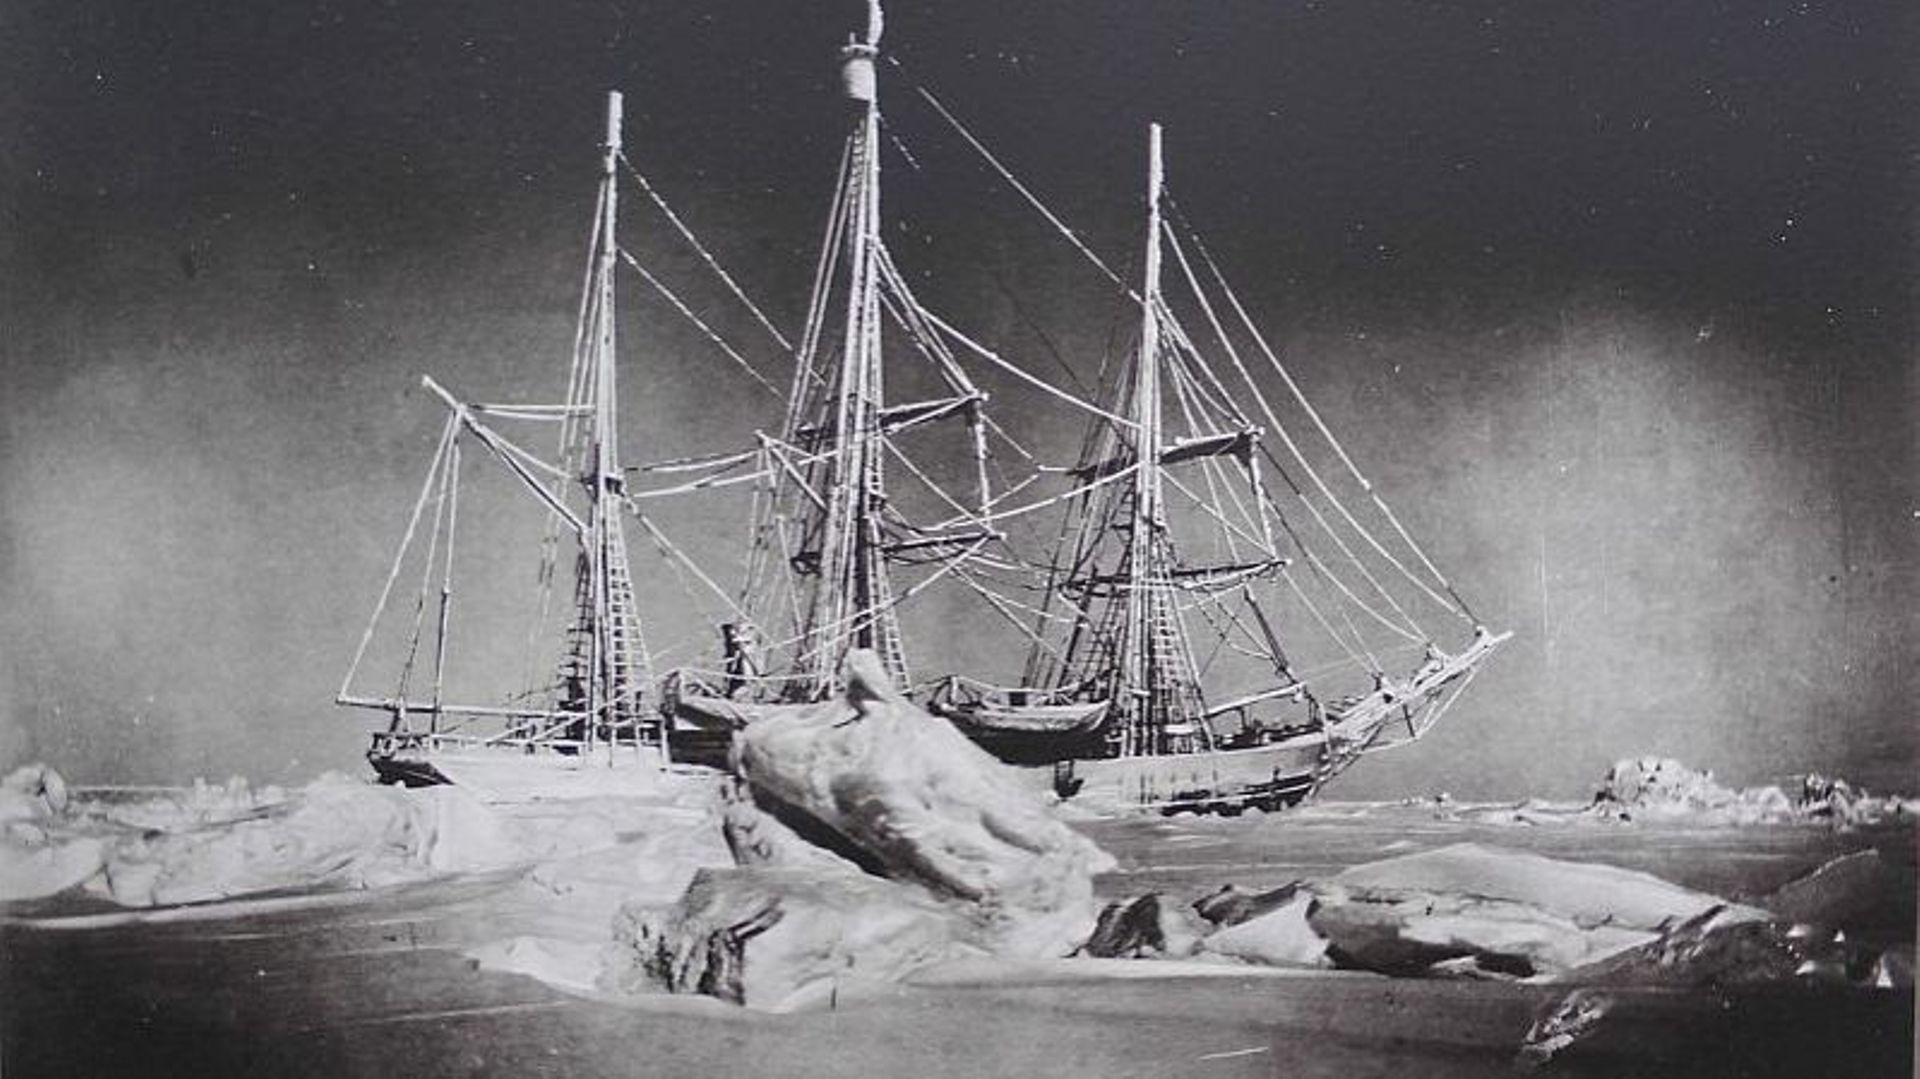 La Belgica est un navire d'exploration scientifique belge connu pour avoir été utilisé lors de l'expédition antarctique belge d'Adrien de Gerlache de Gomery à la fin du XIX e siècle